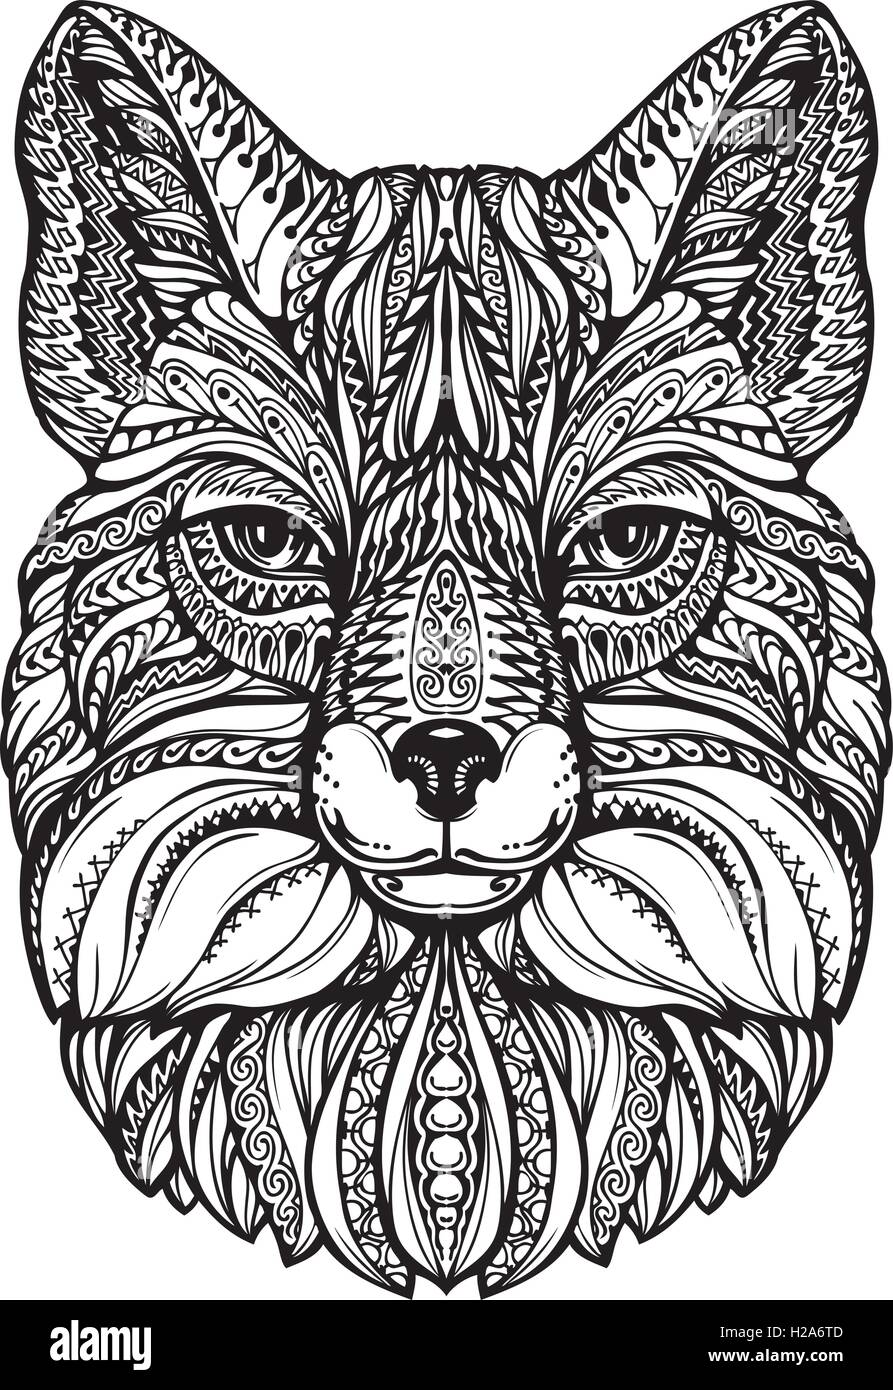 Fuchs-Kopf. Hand gezeichnete Skizze Tier. Ethnischen gemusterten Vektor-illustration Stock Vektor